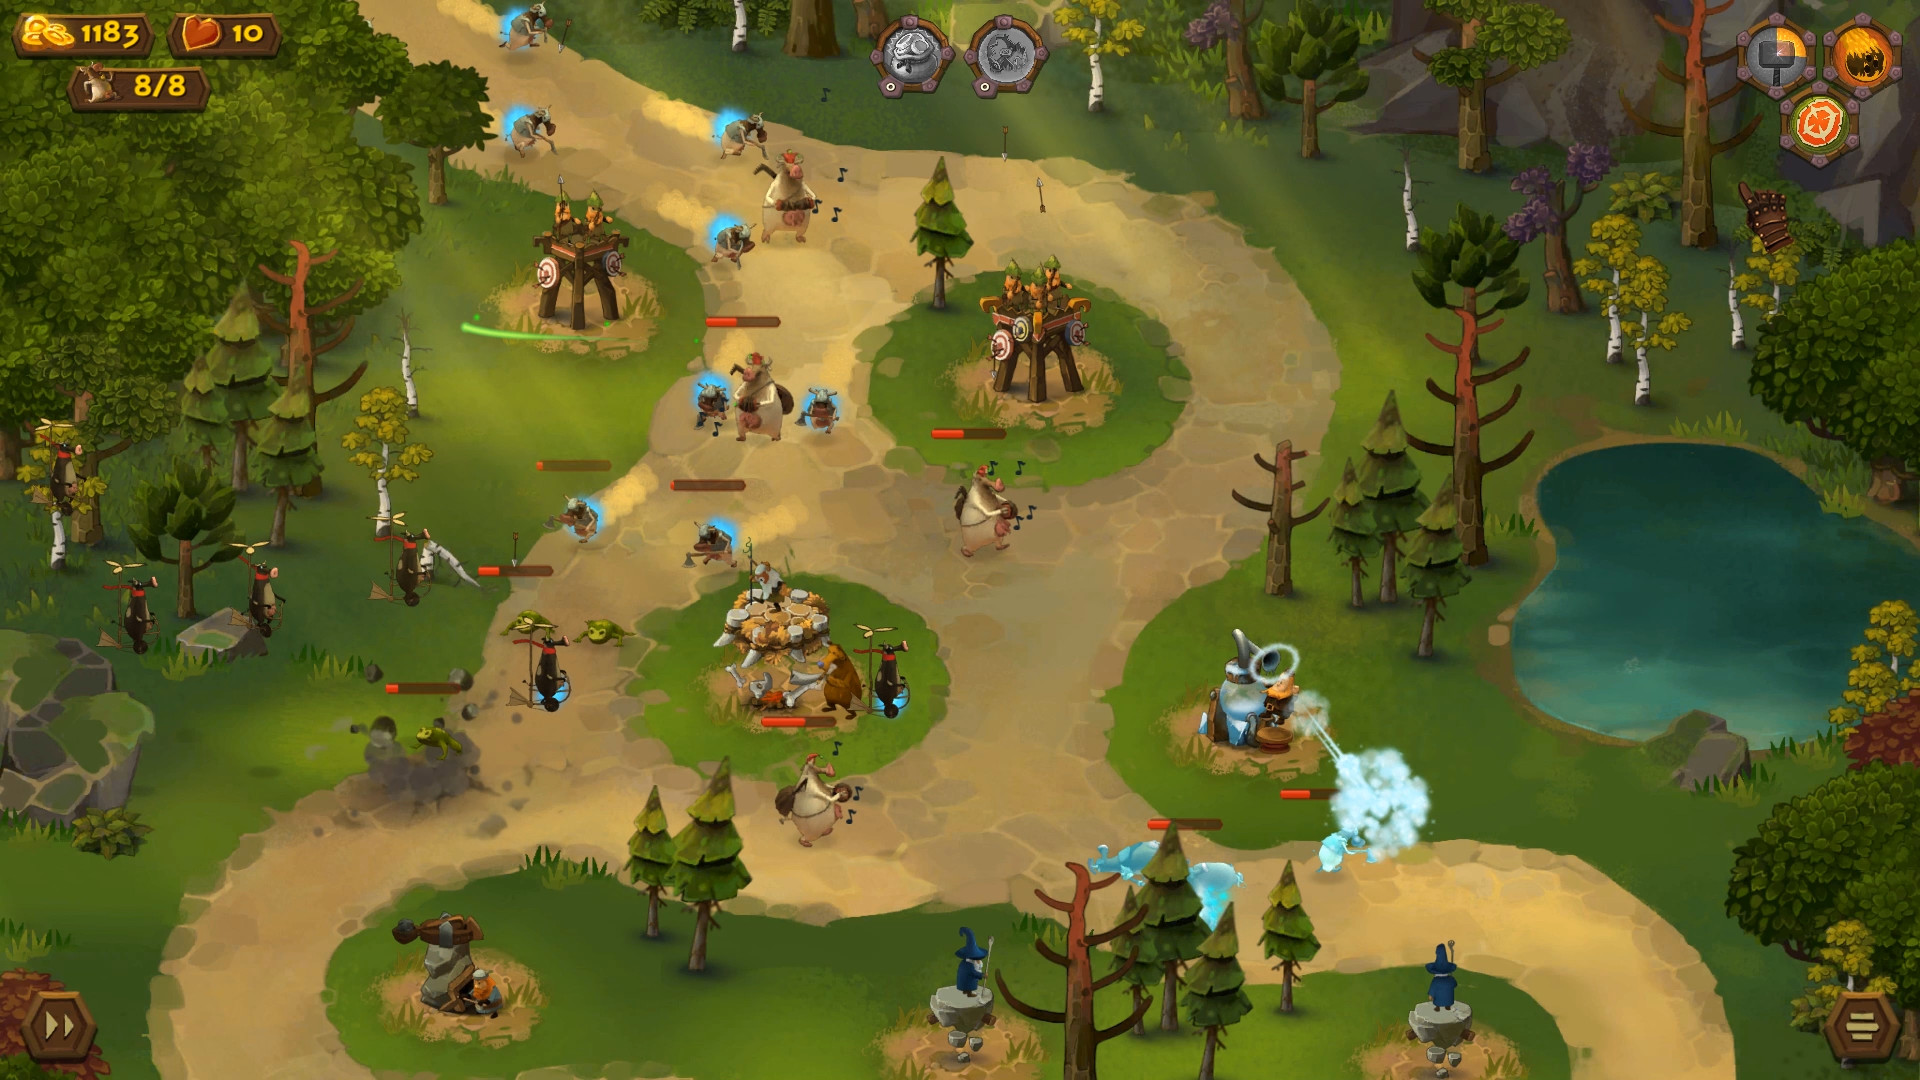 Cows VS Vikings screenshot